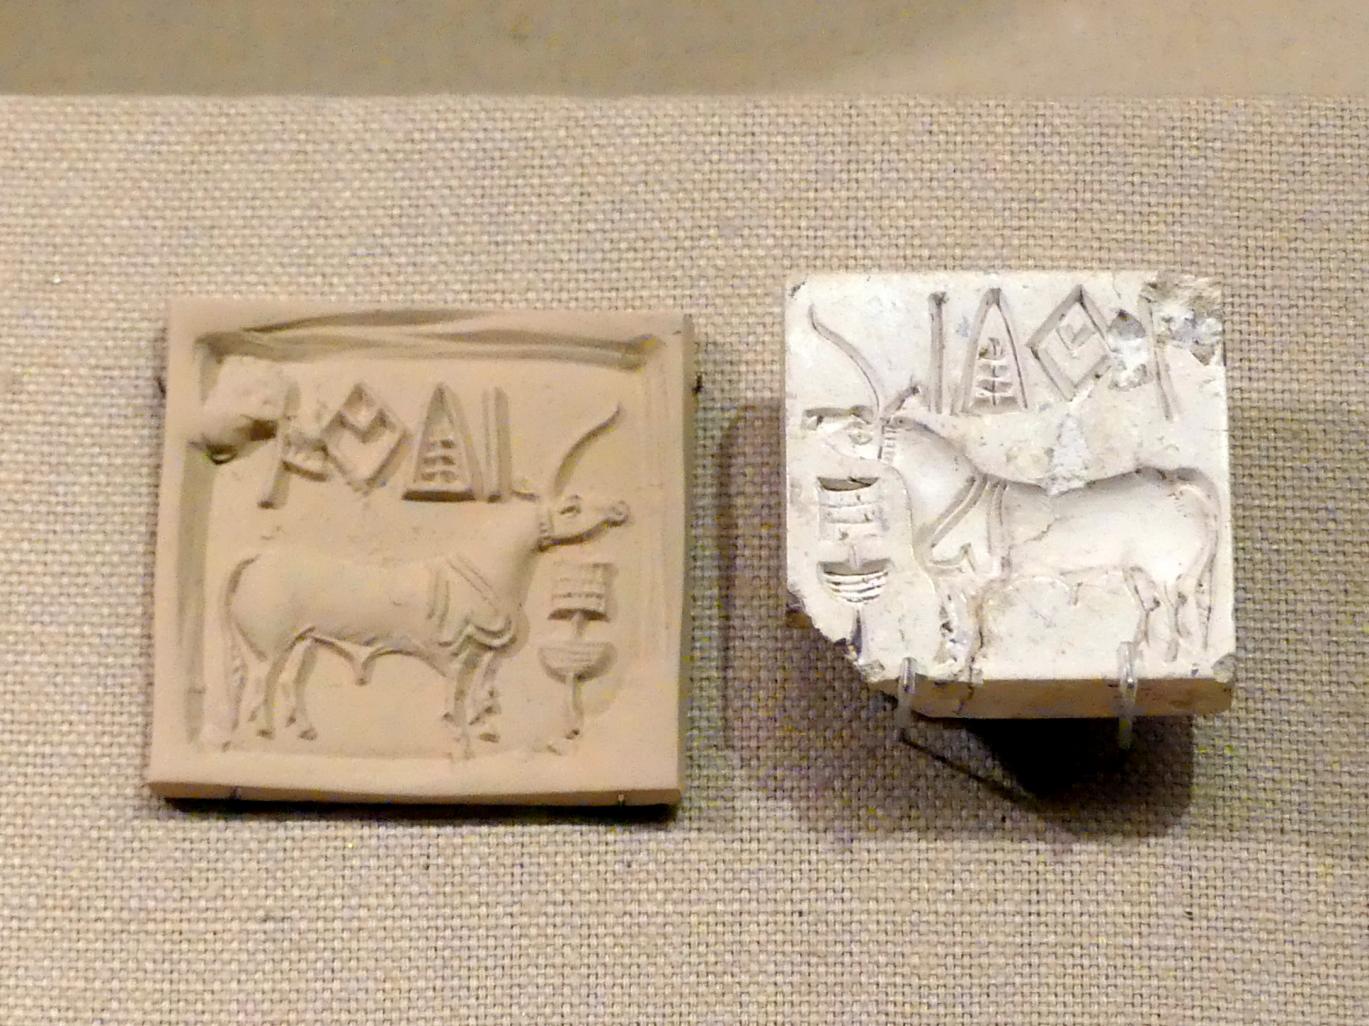 Stempelsiegel und moderner Abdruck: Einhorn- und Weihrauchbrenner (?), Harappan 3, 2600 - 1900 v. Chr., 2600 - 1900 v. Chr., Bild 1/2